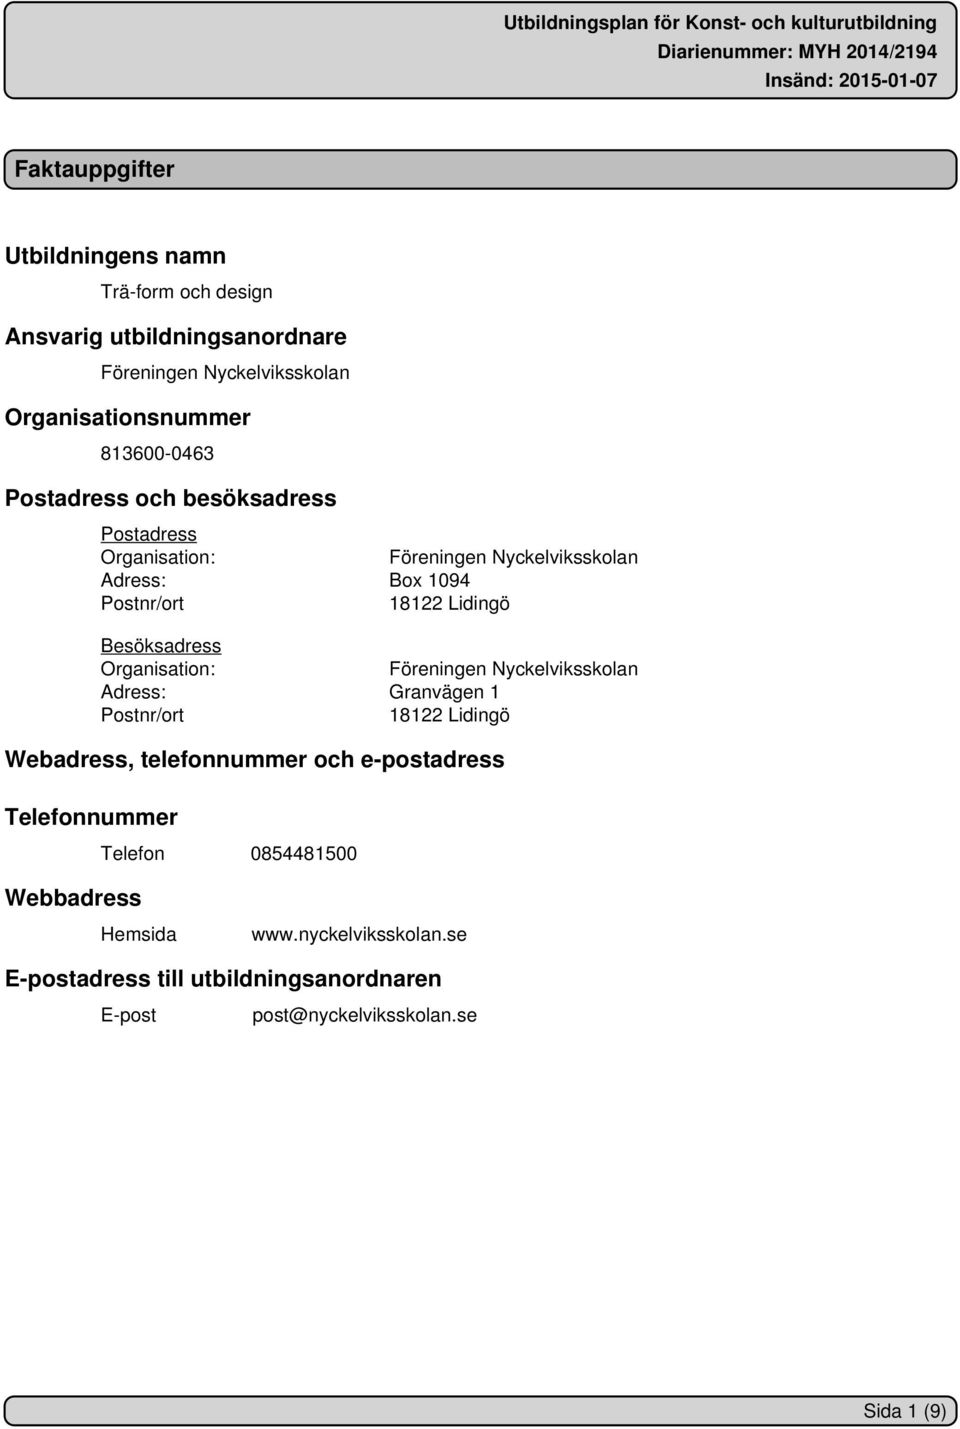 Besöksadress Organisation: Föreningen Nyckelviksskolan Adress: Granvägen 1 Postnr/ort 18122 Lidingö Webadress, telefonnummer och e-postadress